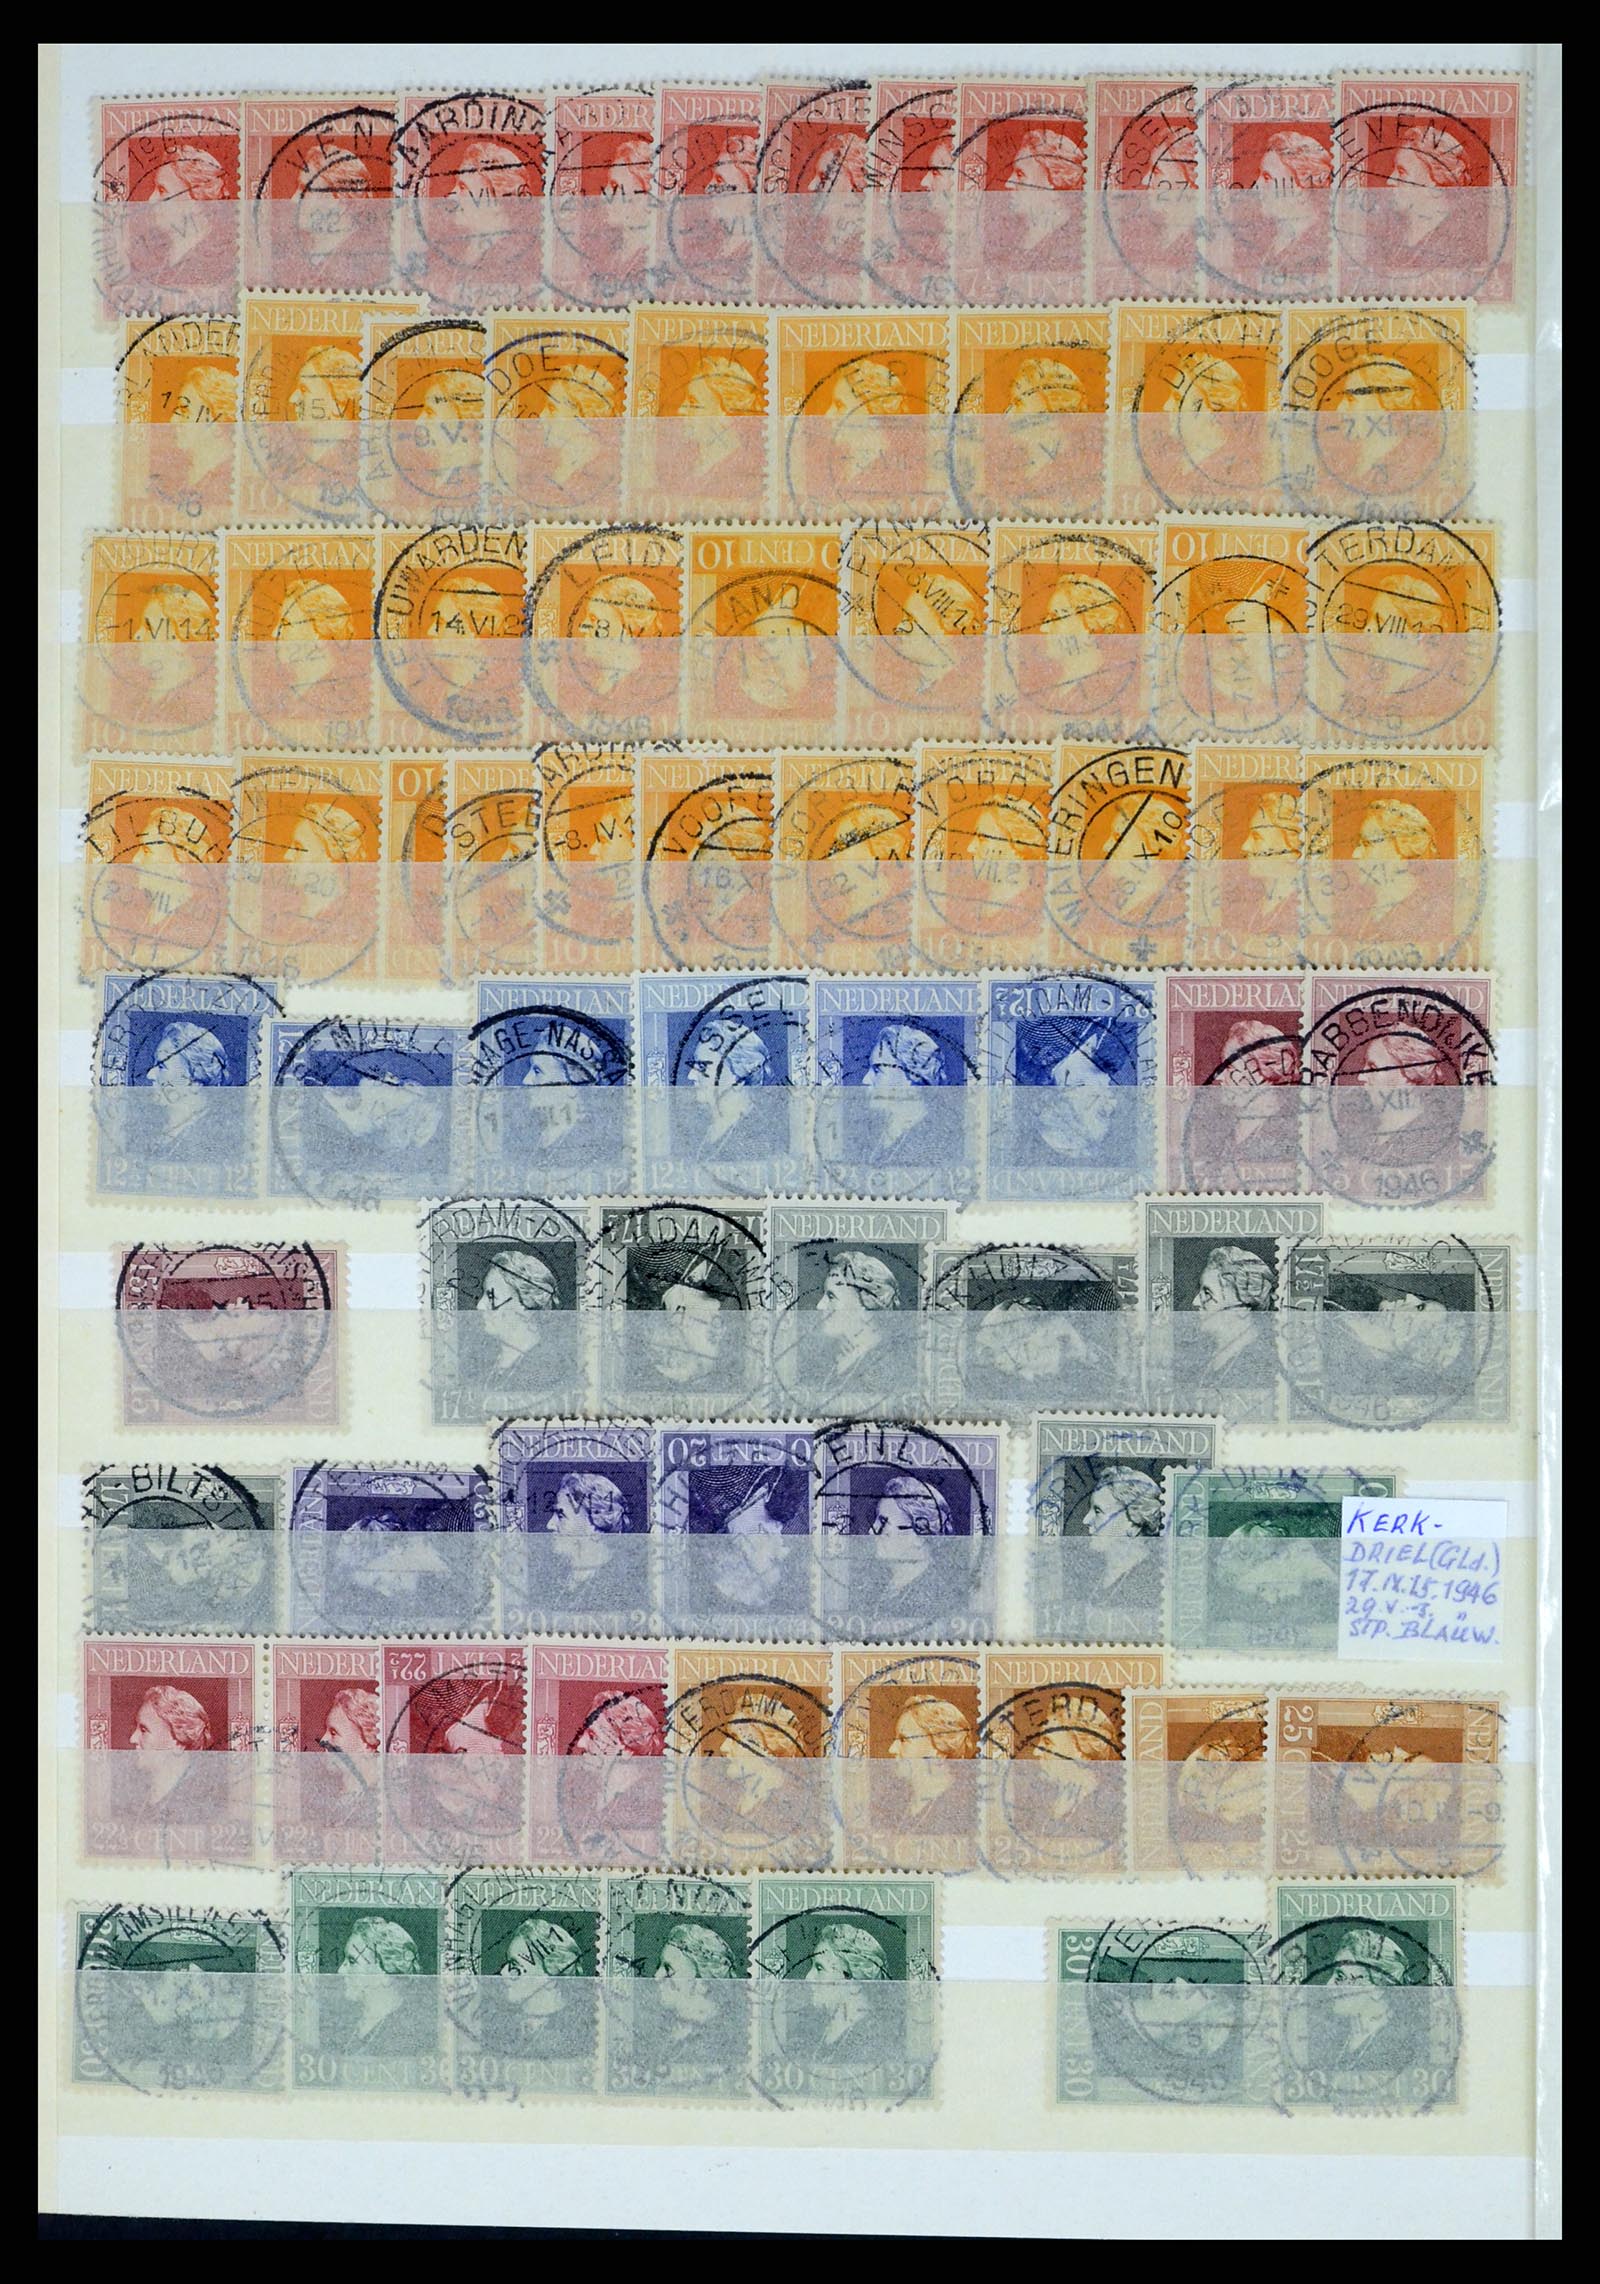 37424 040 - Postzegelverzameling 37424 Nederland kortebalk stempels.